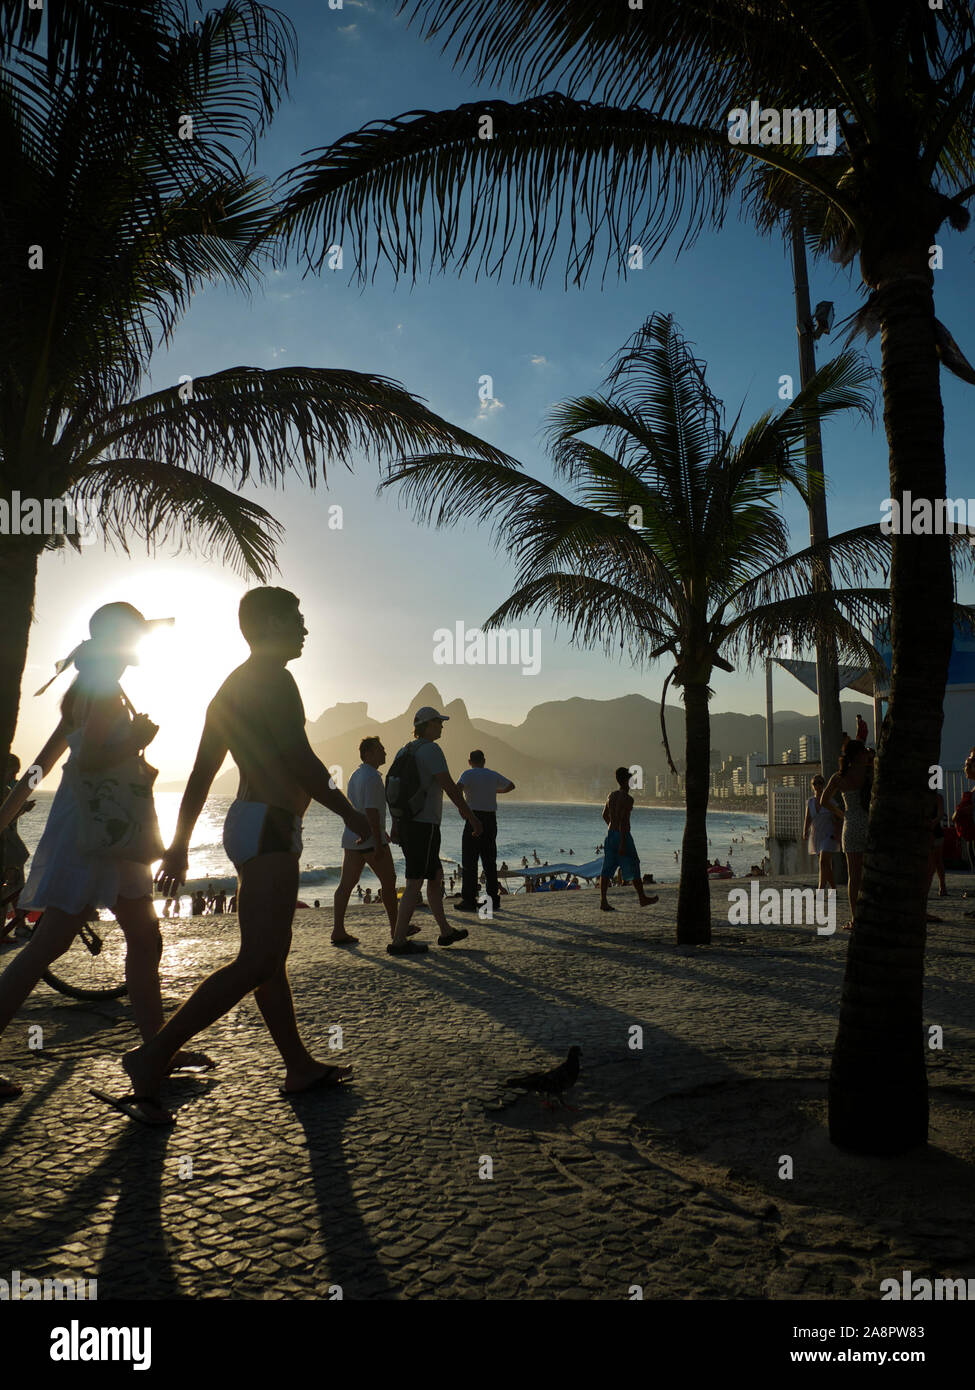 Rio DE JANEIRO - 2. FEBRUAR 2012: Strandgänger spazieren zwischen Palmen auf dem Boardwalk in Arpoador, einem beliebten Ort, an dem Sie den Sonnenuntergang beobachten können. Stockfoto